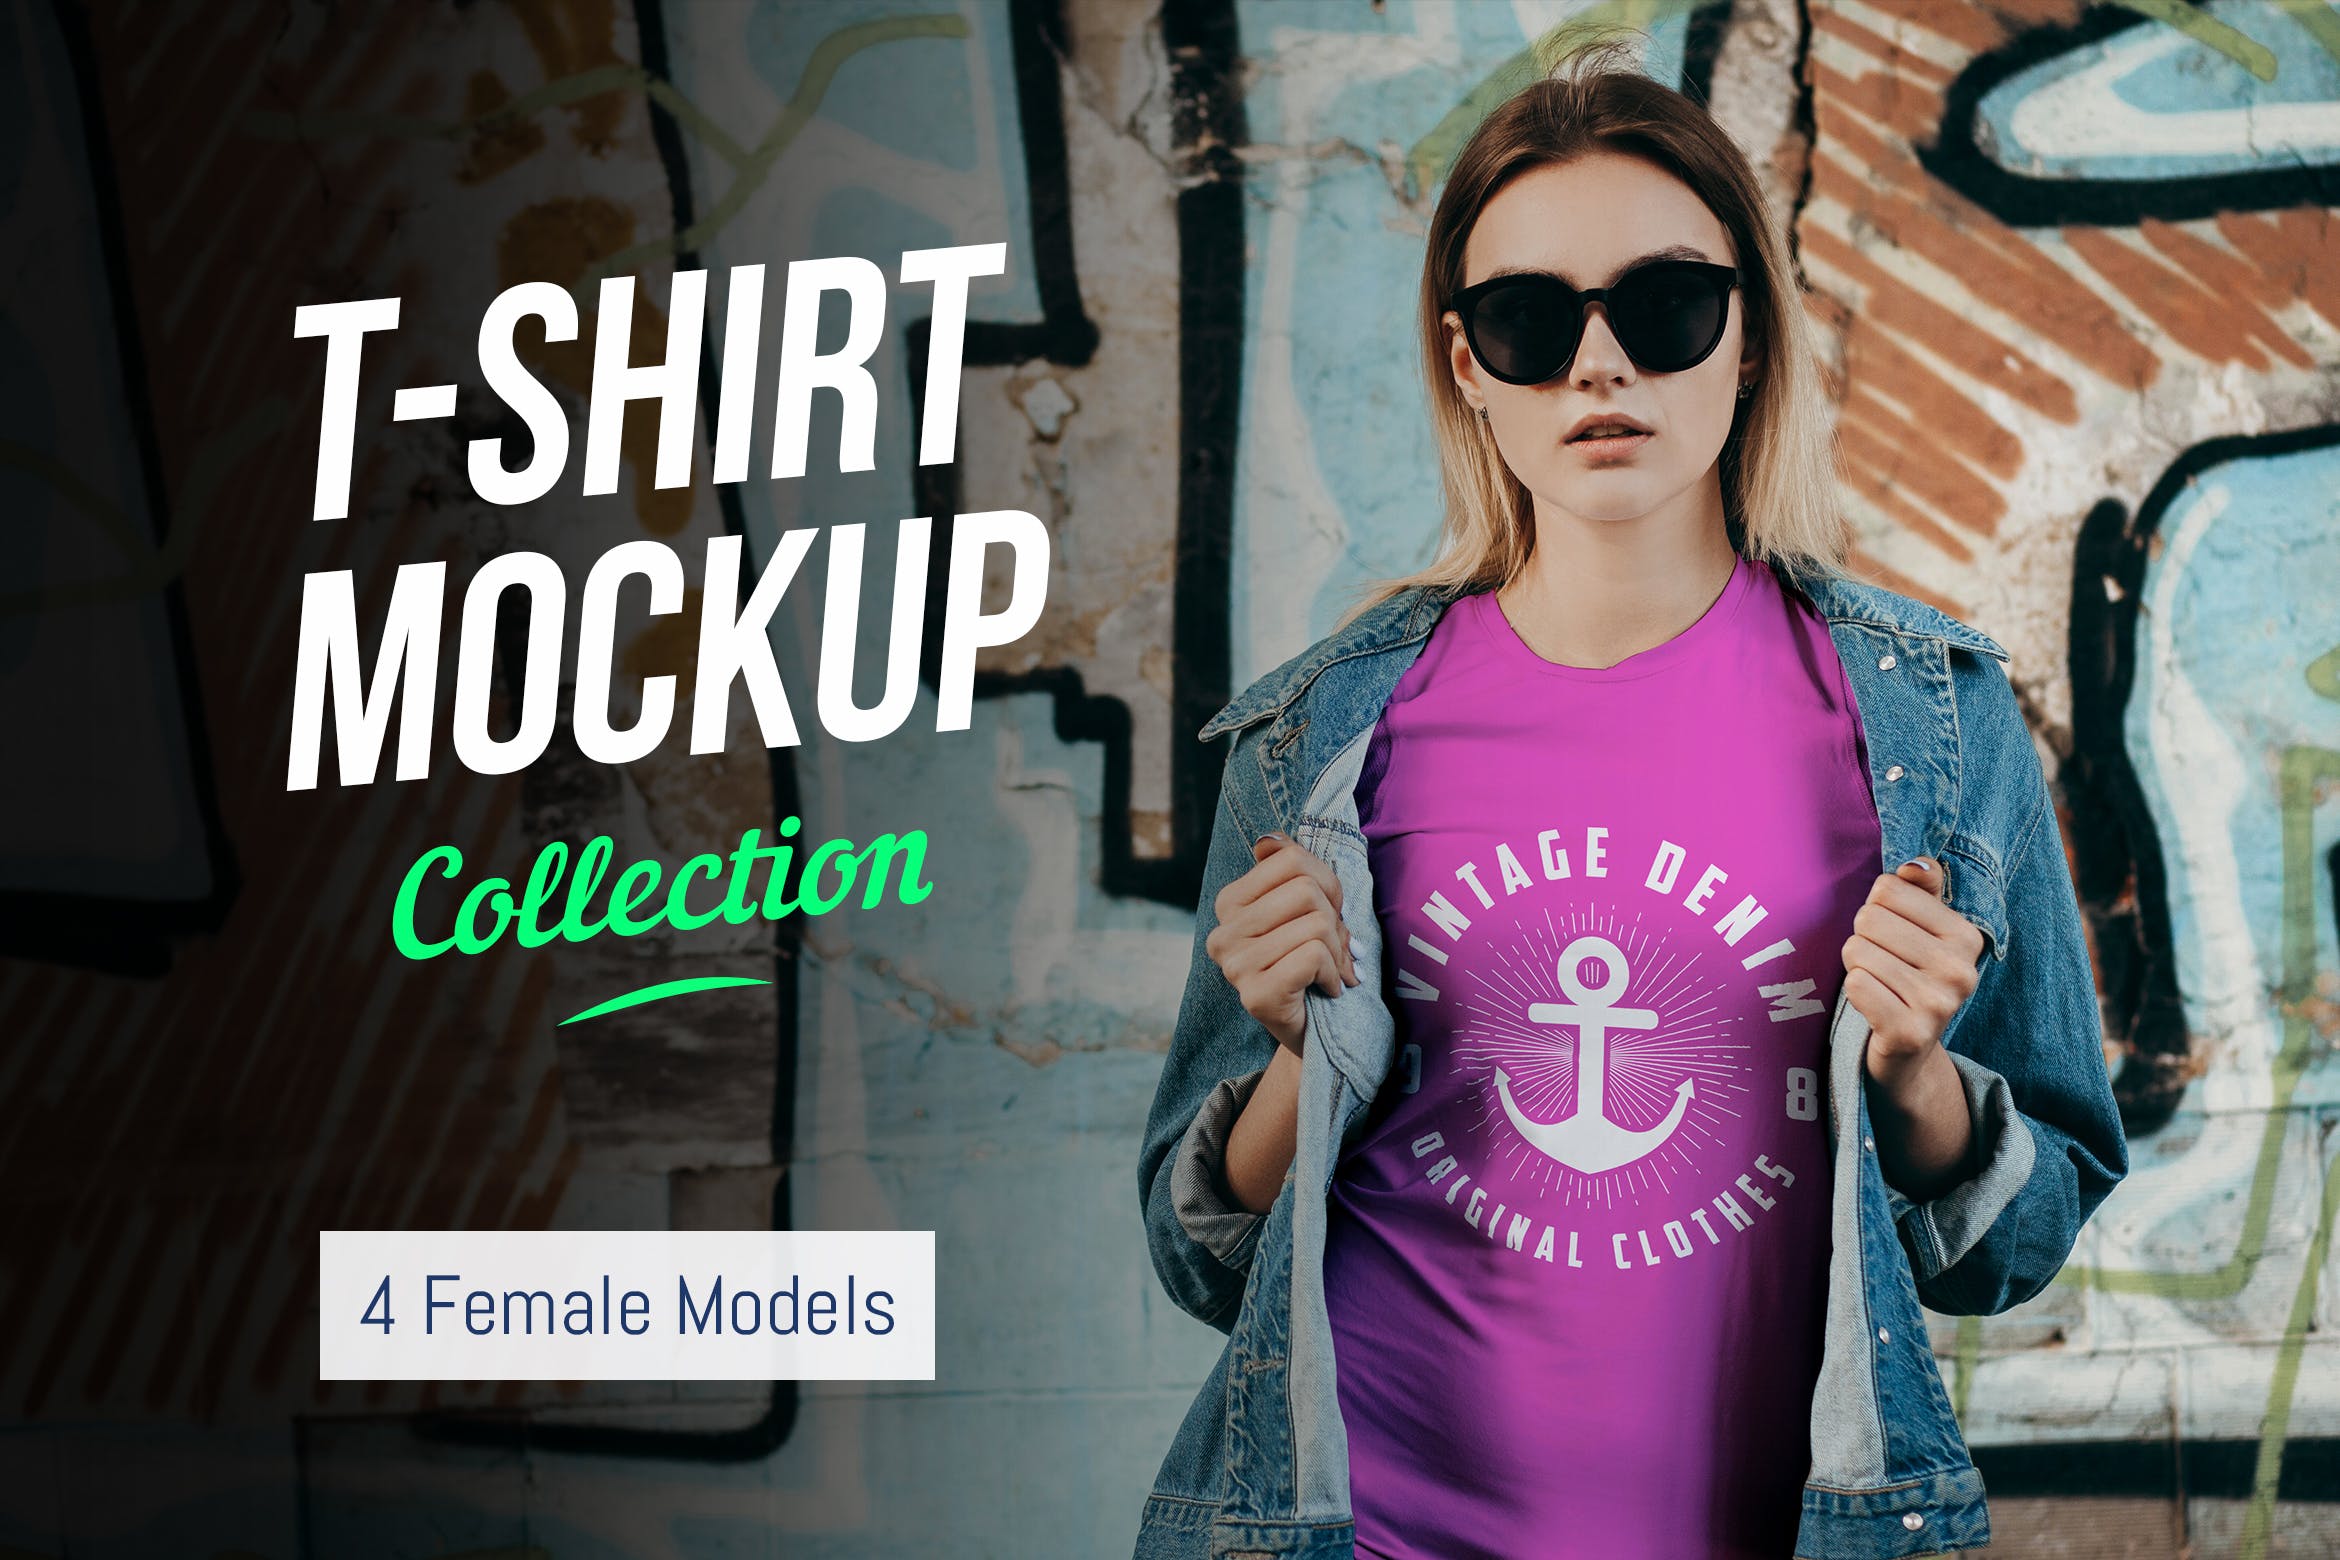 女士T恤印花设计效果图样机素材库精选合集v02 T-Shirt Mockup Collection 02插图